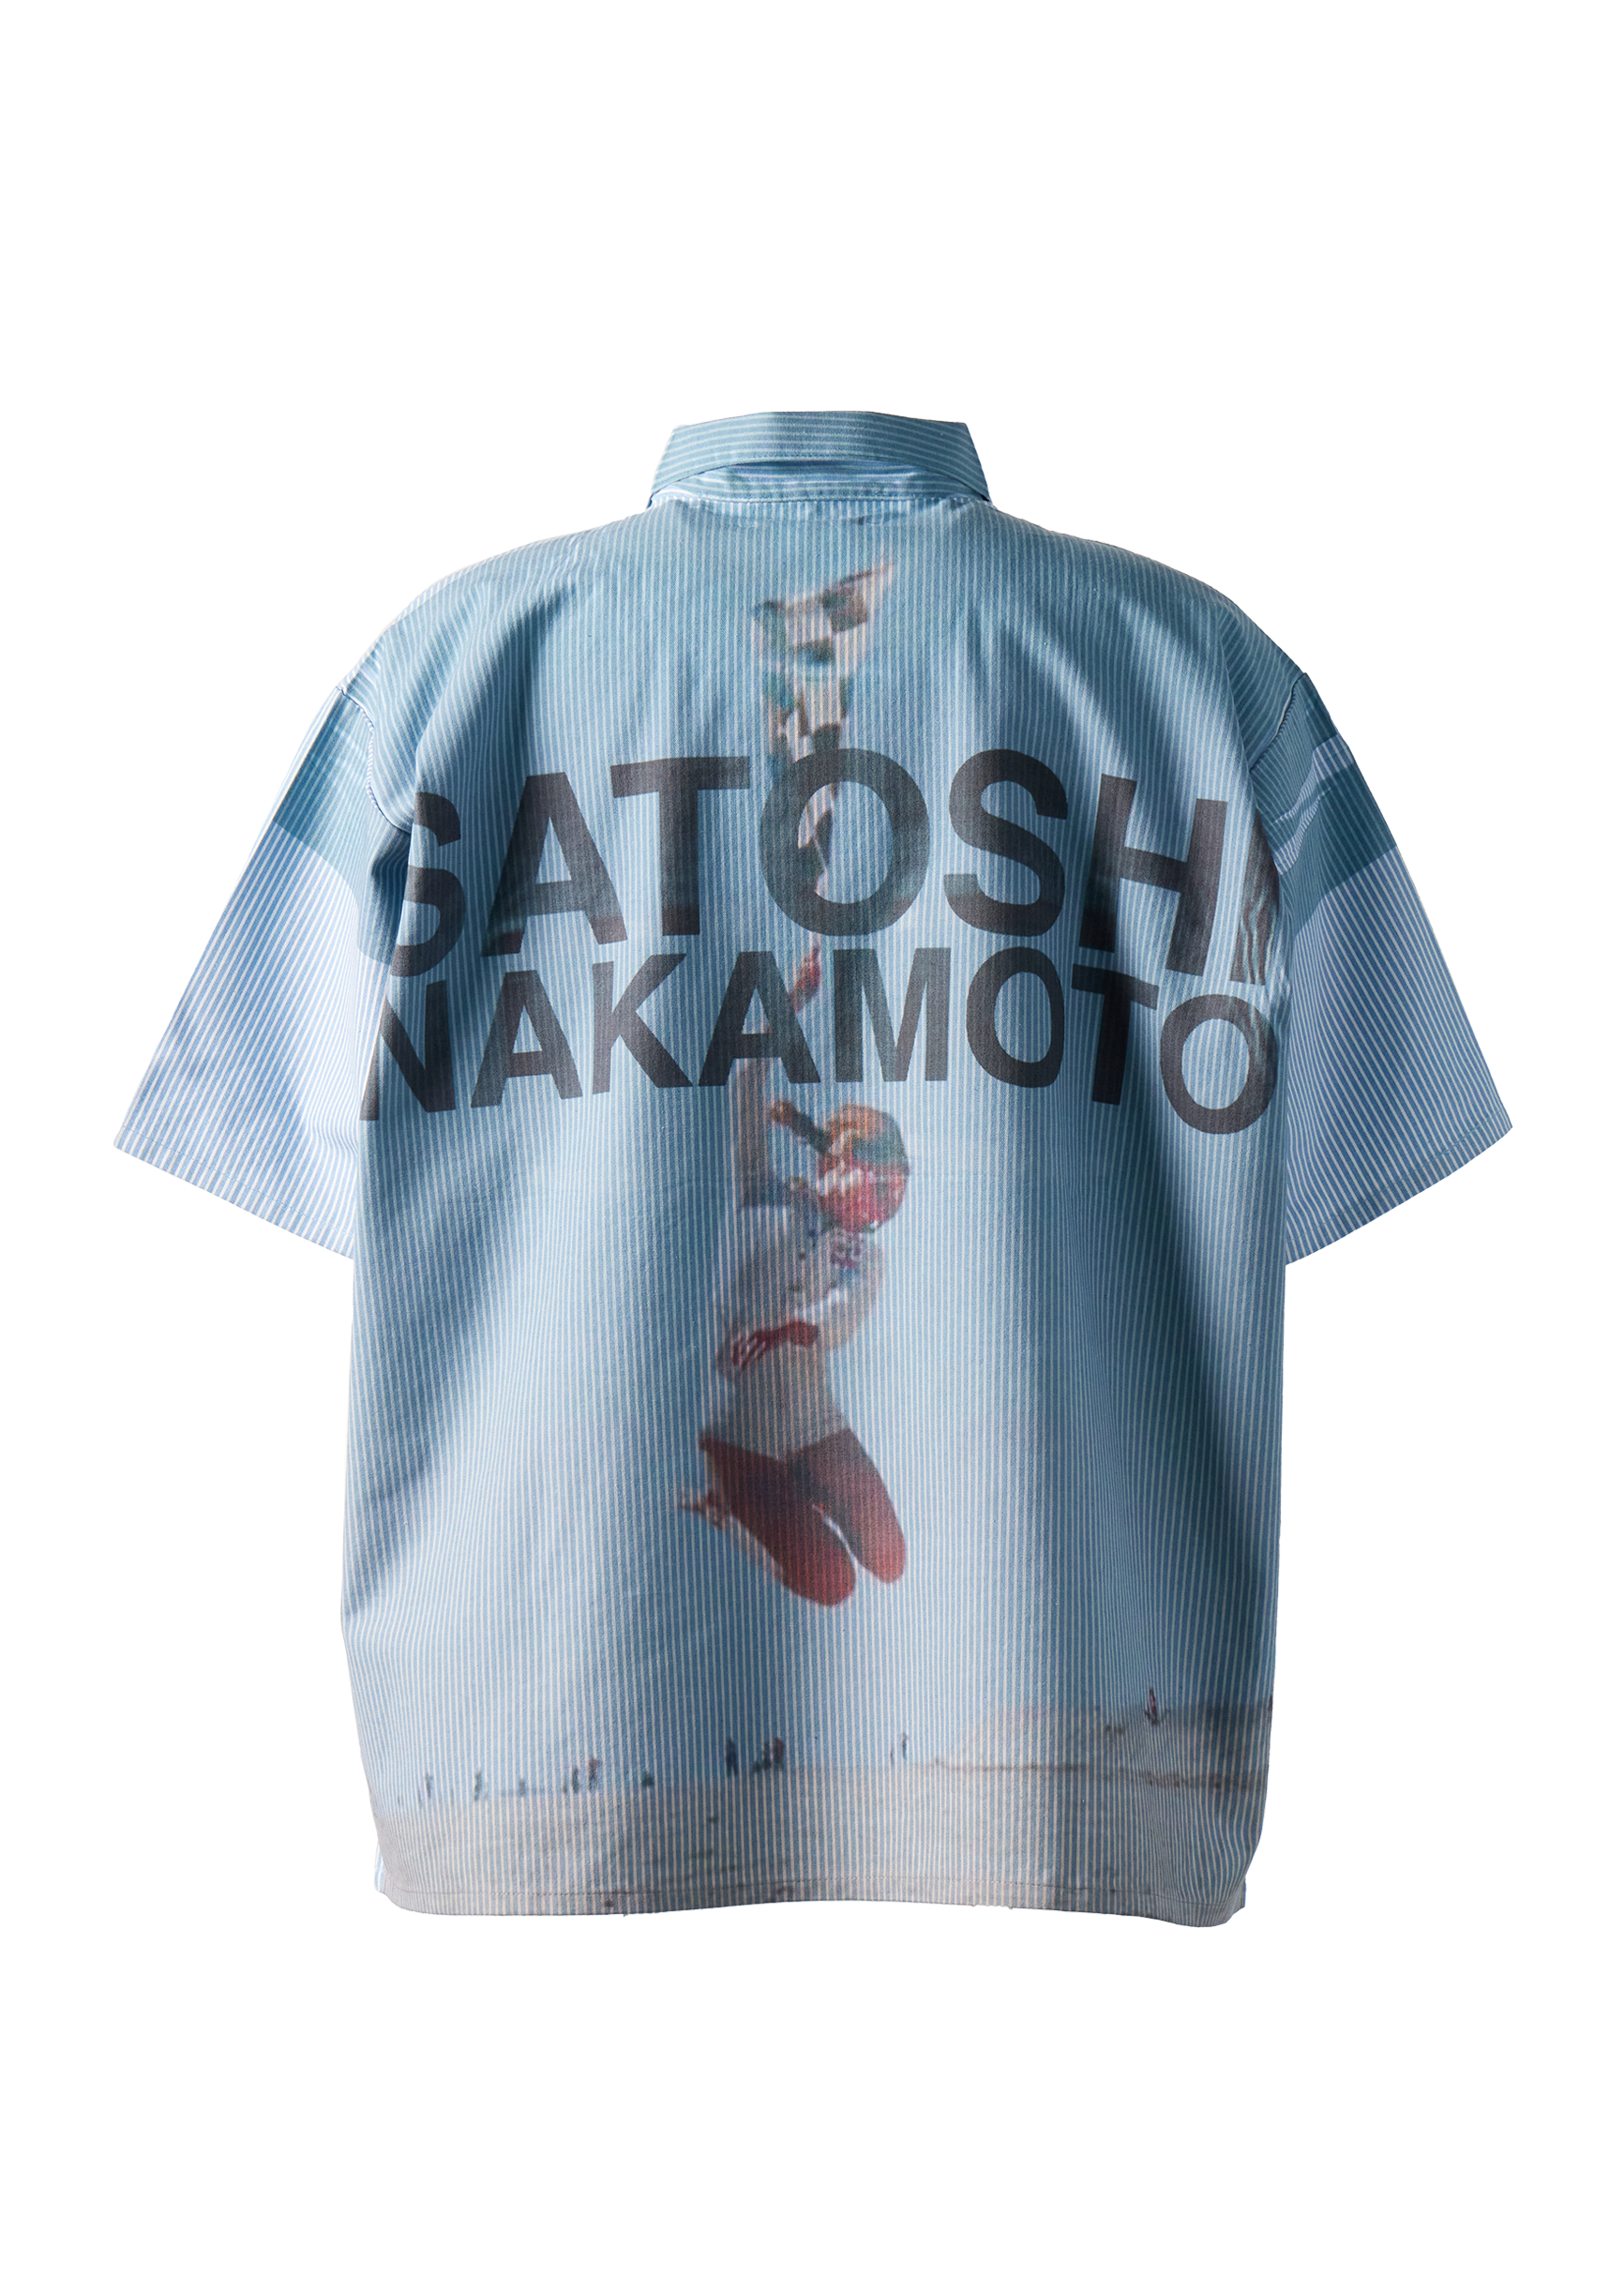 SATOSHI NAKAMOTO - Racer Workshirt product image